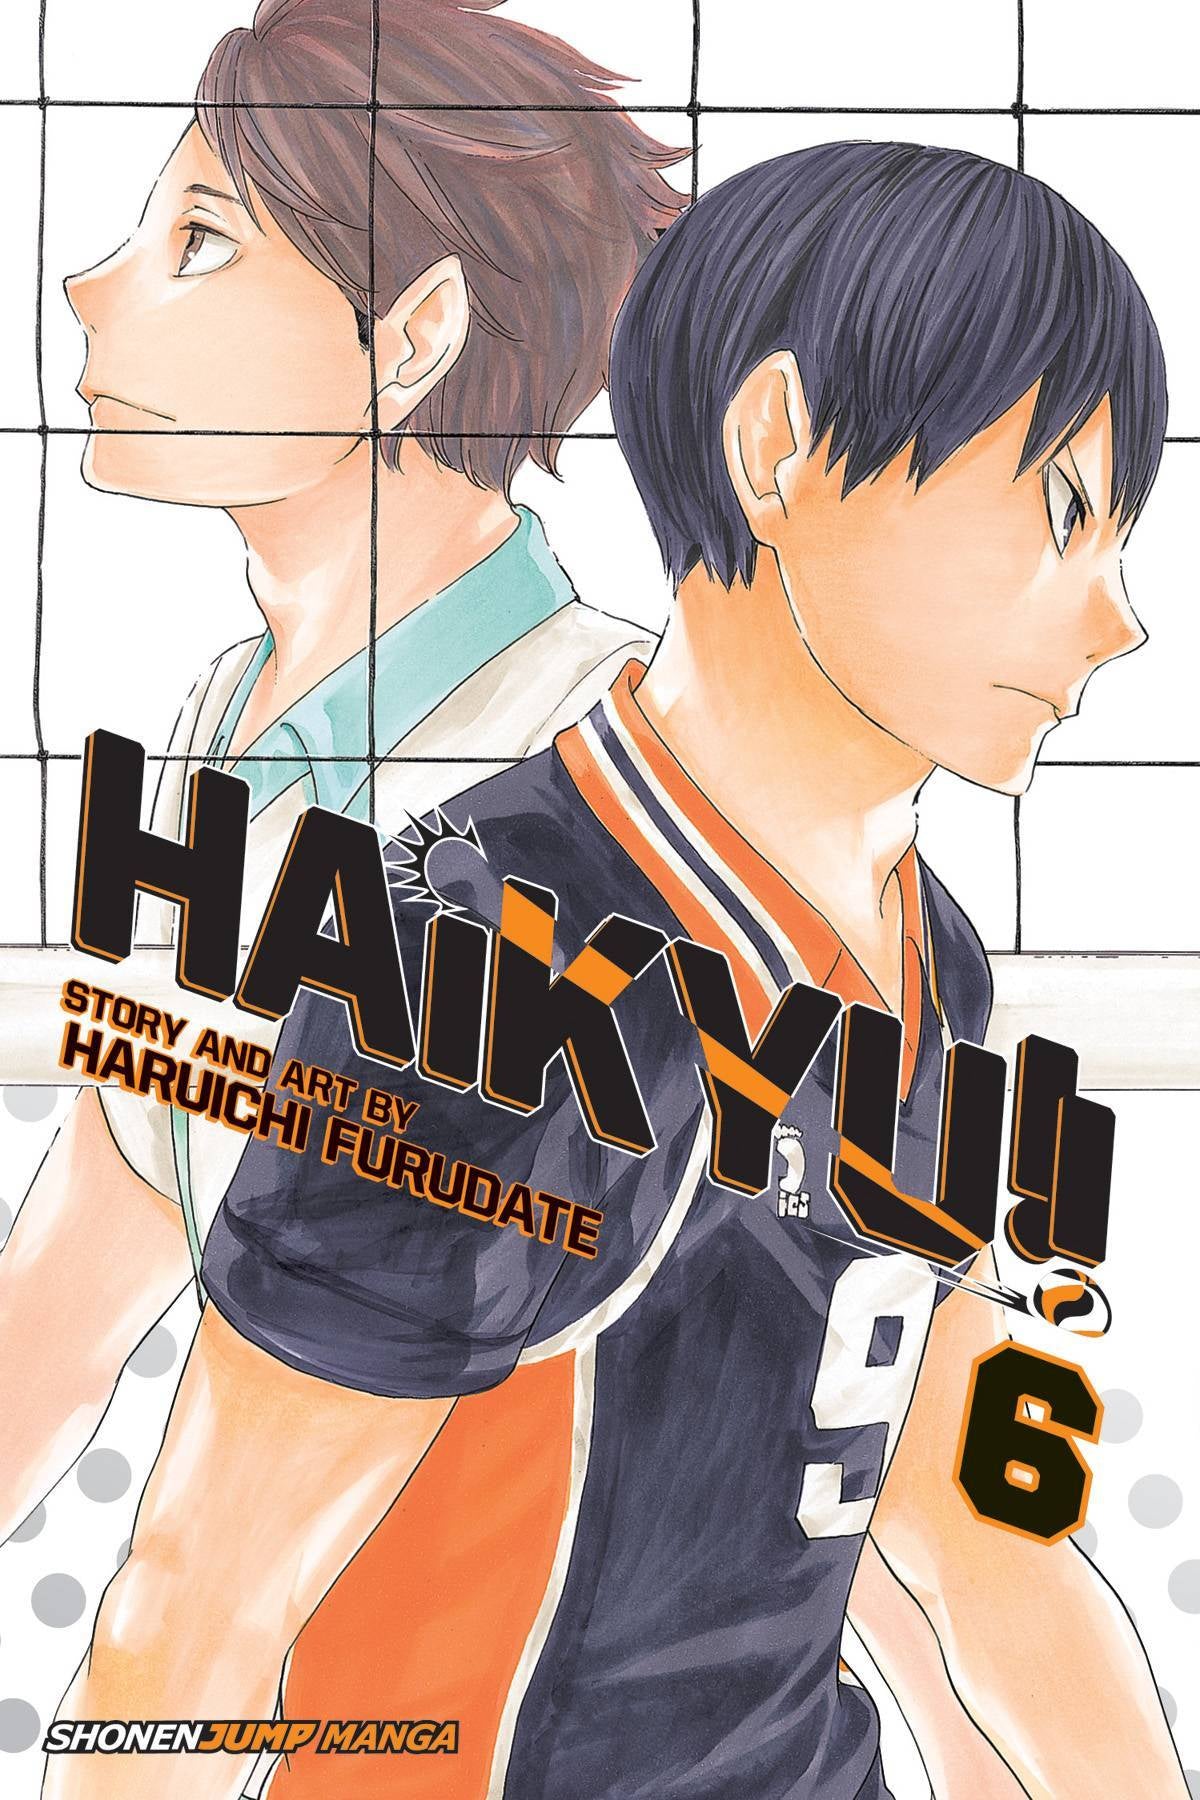 HAIKYU VOLUME 06